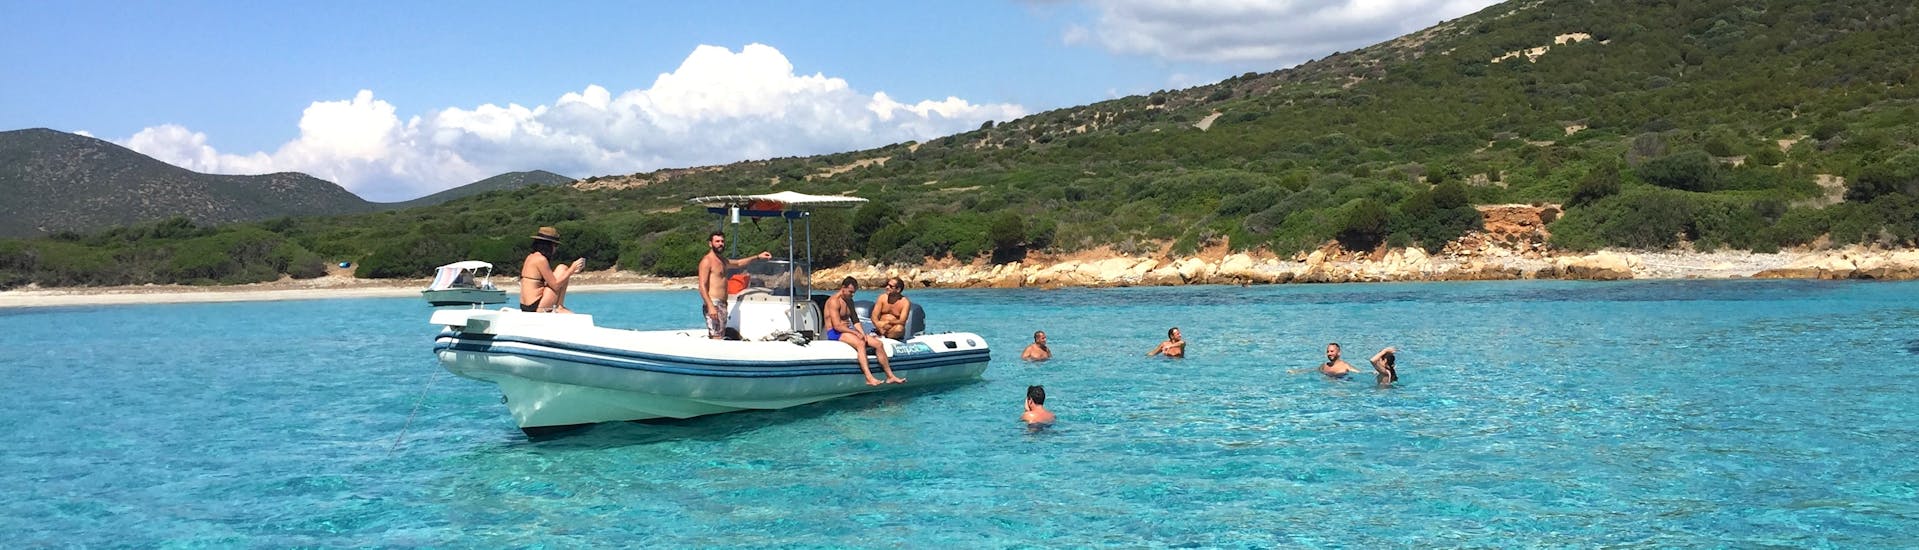 Personen schwimmen im klaren Wasser um das Boot während der Privaten RIB-Bootstour von Cagliari zum Poetto-Strand mit Schnorcheln.